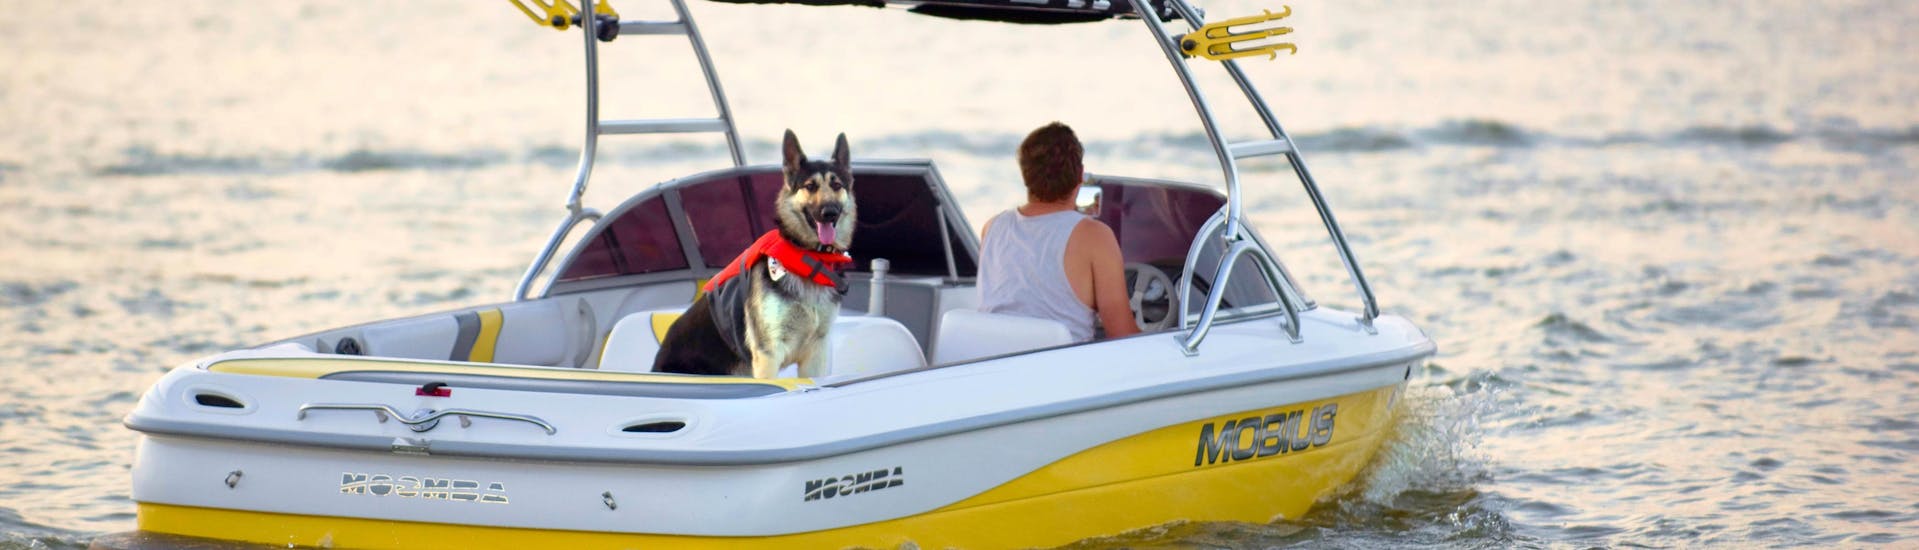 Une personne s'amusant avec son chien lors d'une activité de location de bateaux avec chiens et animaux de compagnie.